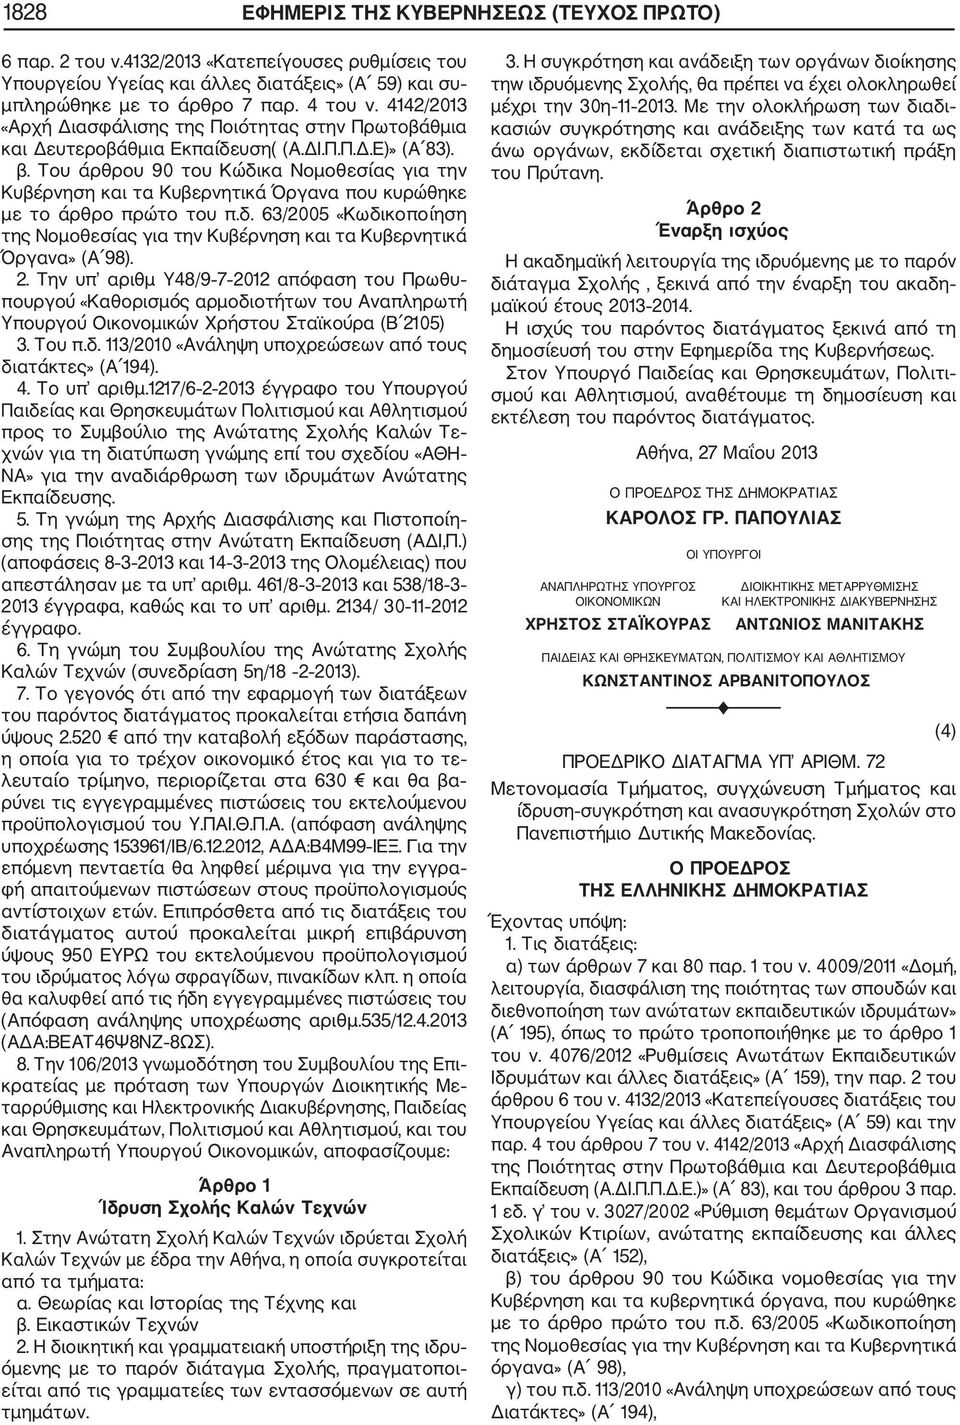 Του άρθρου 90 του Κώδικα Νομοθεσίας για την Κυβέρνηση και τα Κυβερνητικά Όργανα που κυρώθηκε με το άρθρο πρώτο του π.δ. 63/2005 «Κωδικοποίηση της Νομοθεσίας για την Κυβέρνηση και τα Κυβερνητικά Όργανα» (Α 98).